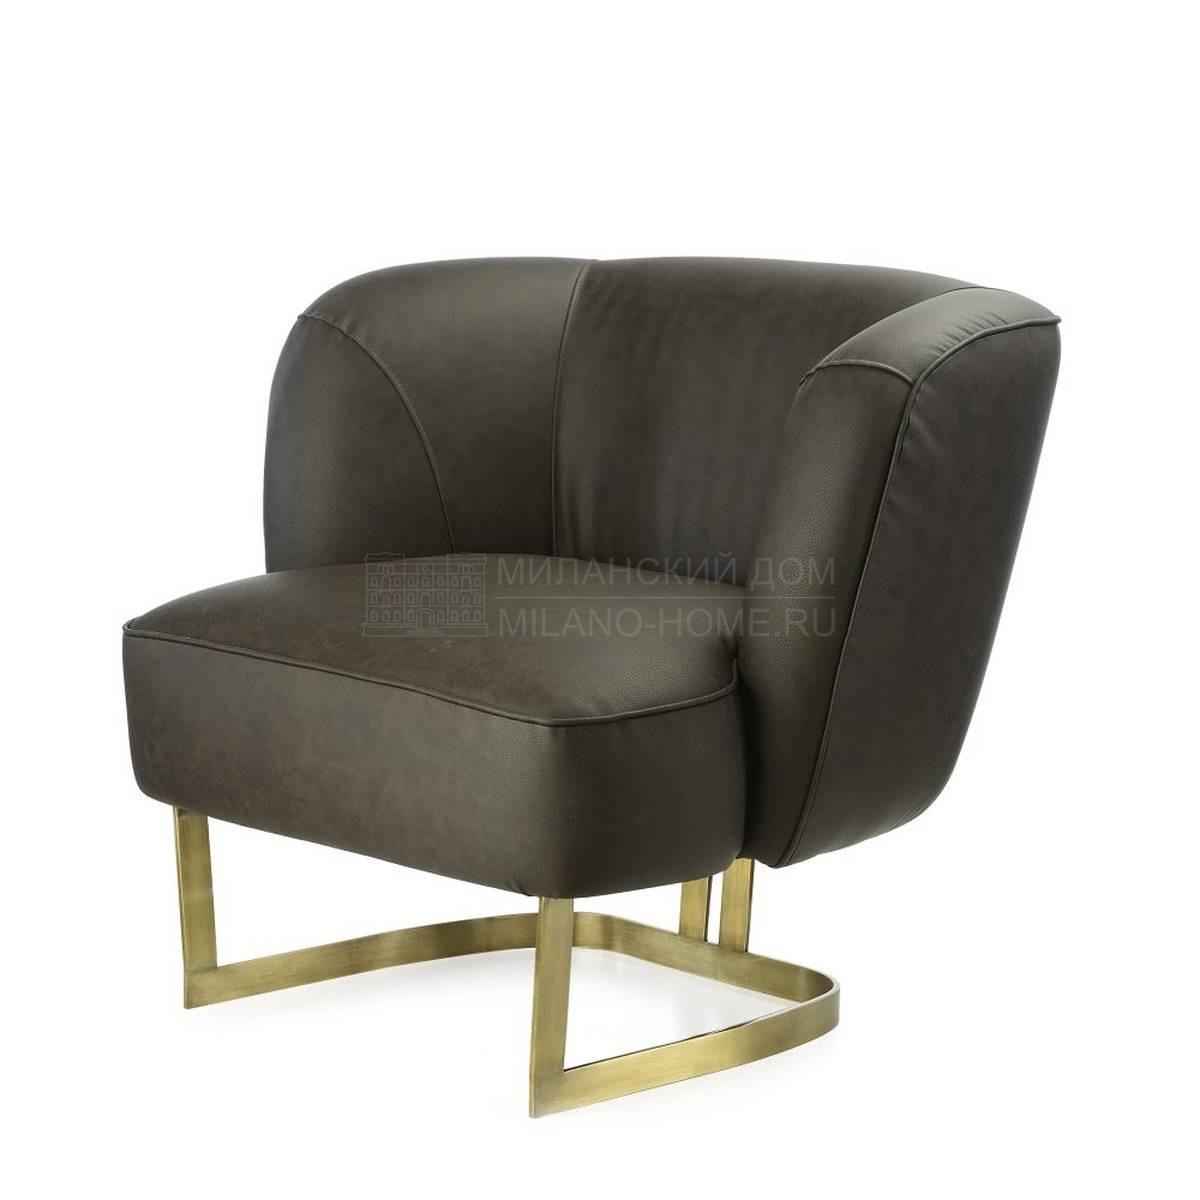 Кожаное кресло Joan armchair из Италии фабрики MARIONI